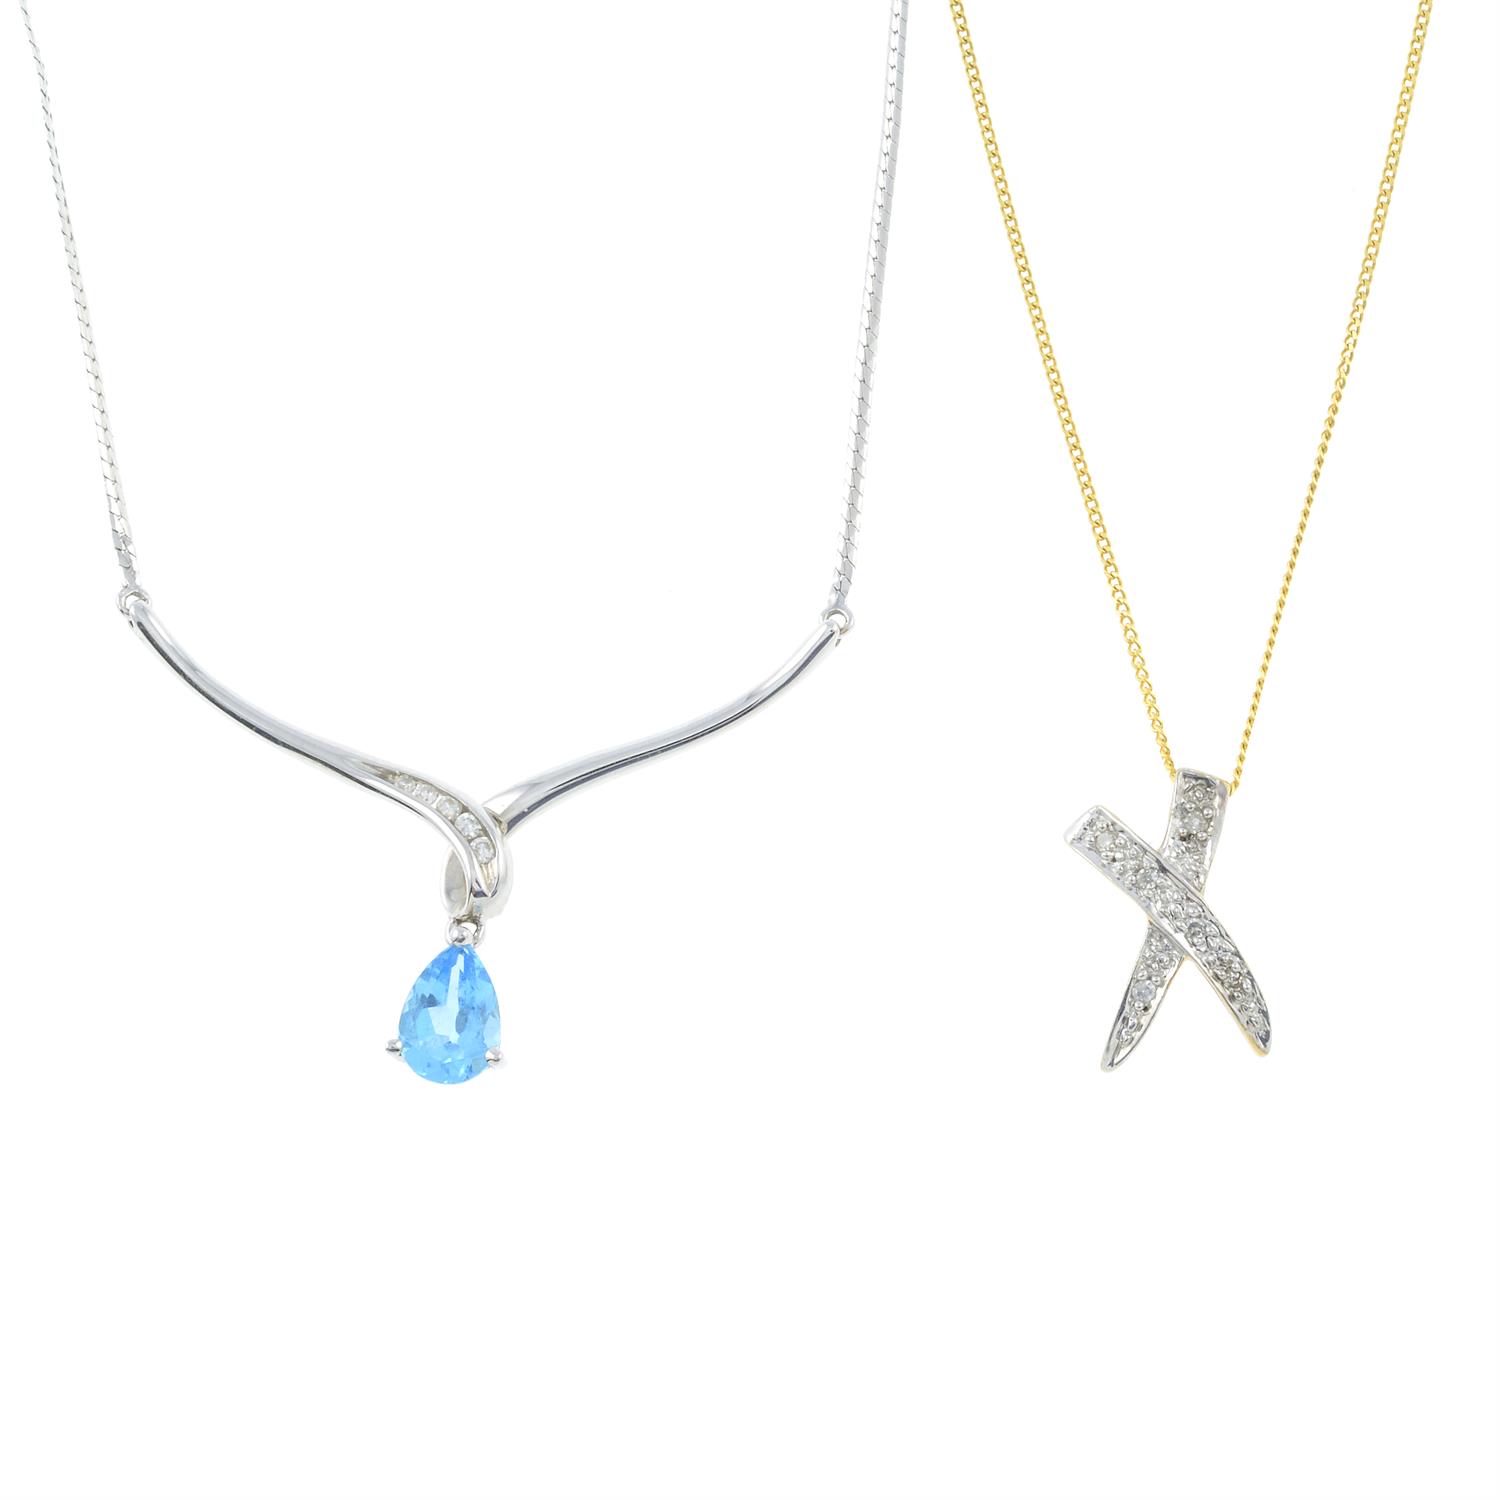 Two gem-set necklaces.